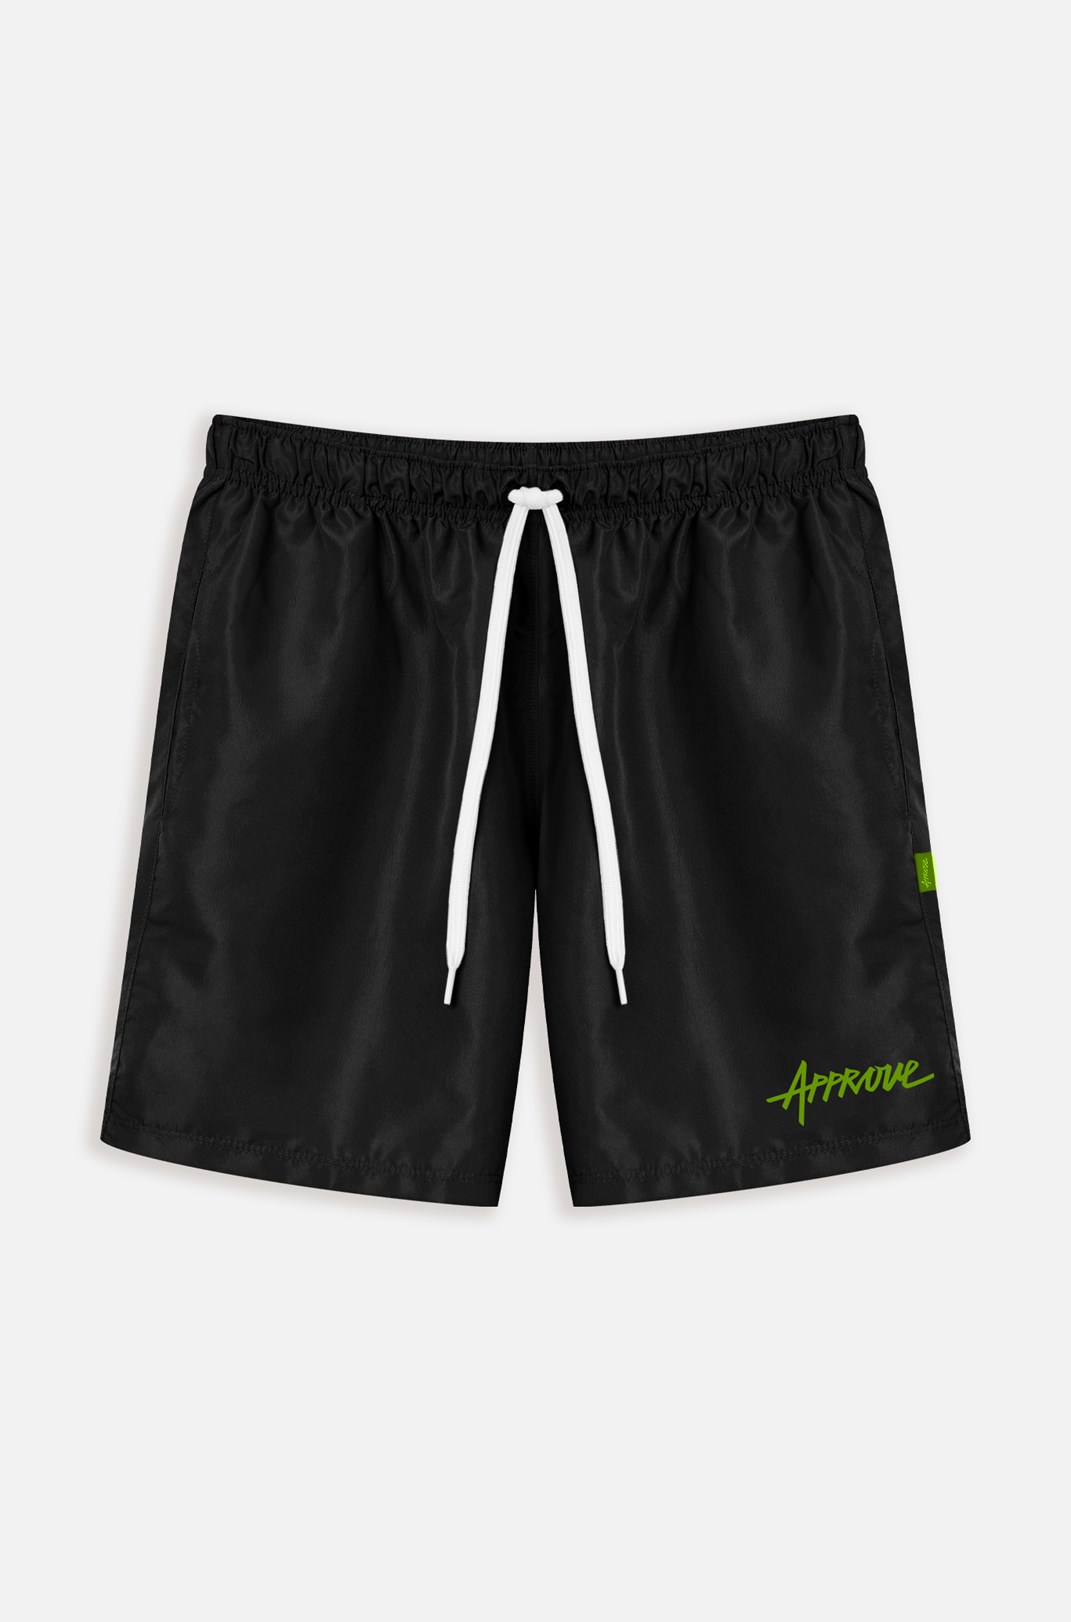 Shorts 7inches Approve Preto e Neon